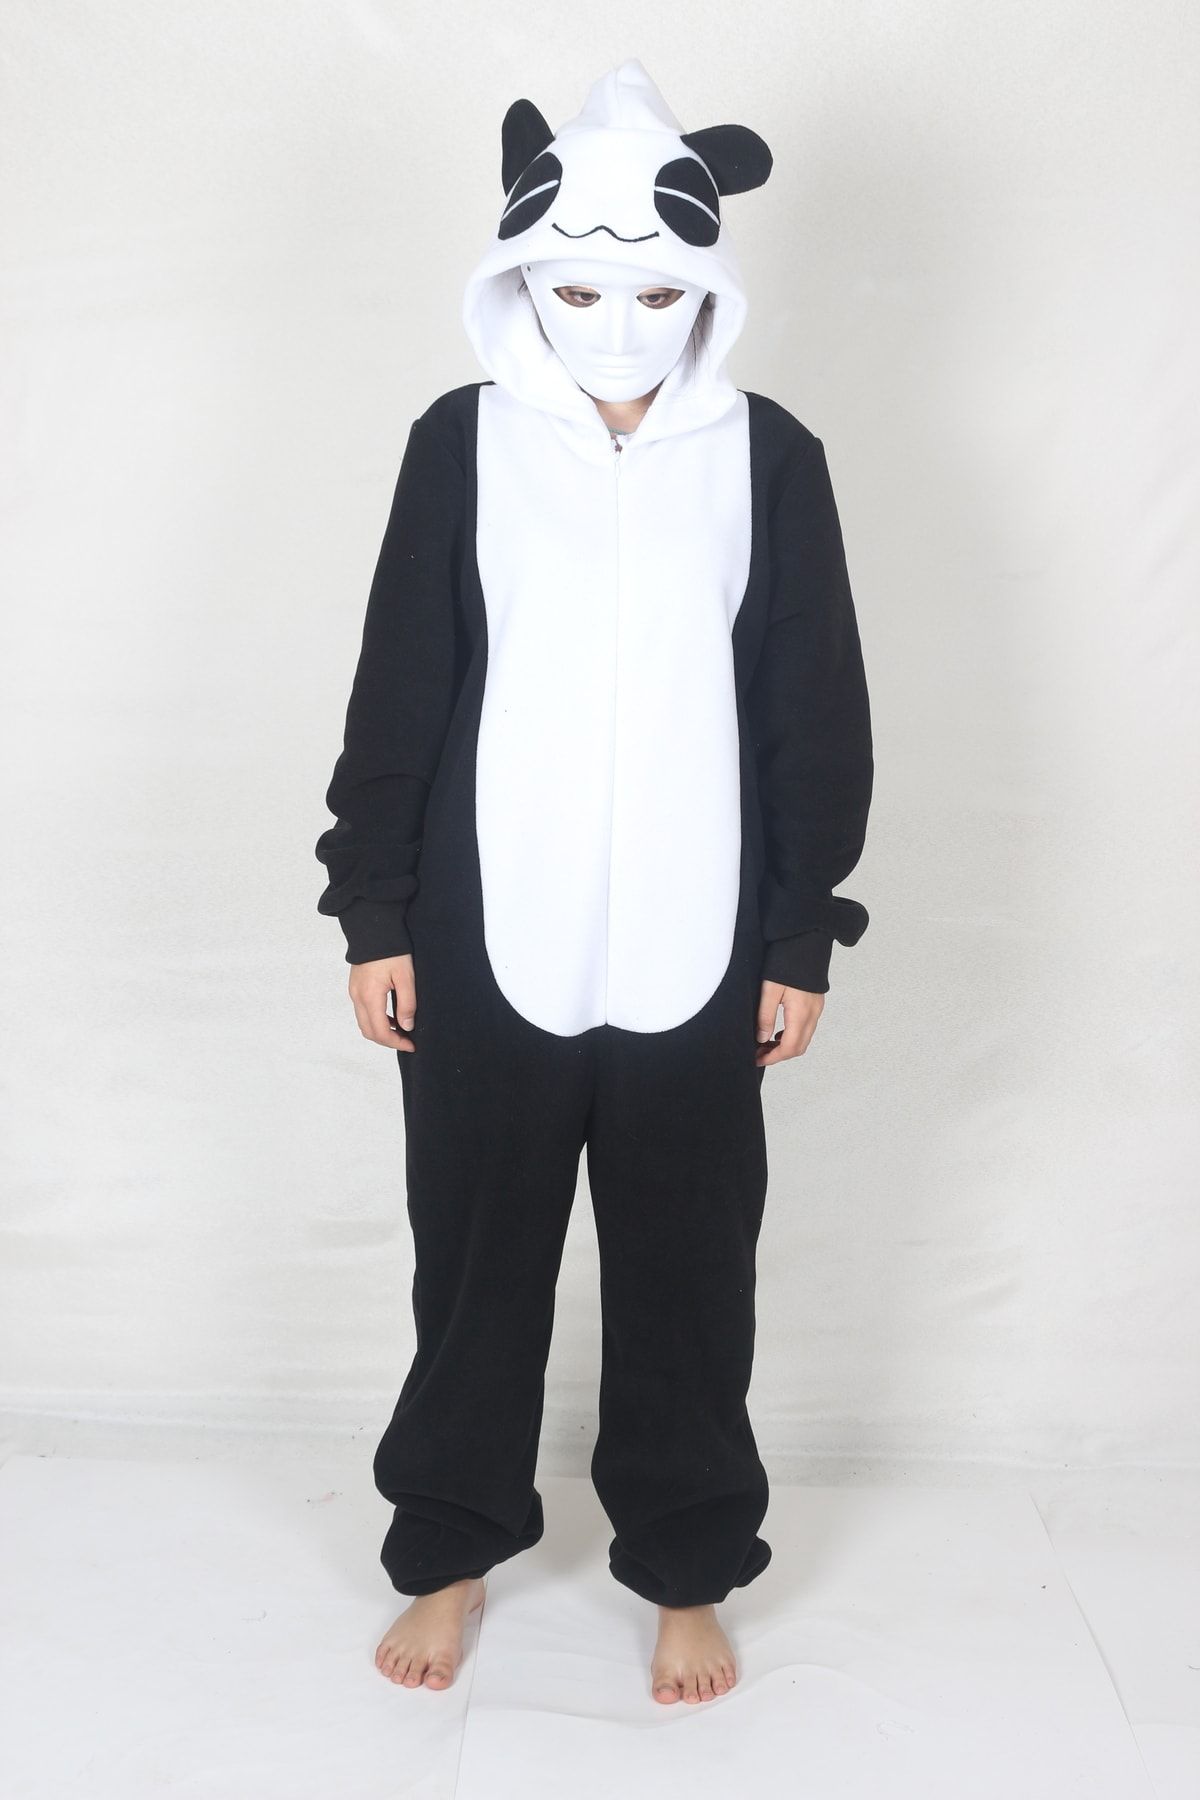 YÜSÜ Yetişkin Panda Kostümü Hayvan Kostümü Rahat Pijama Kostümü